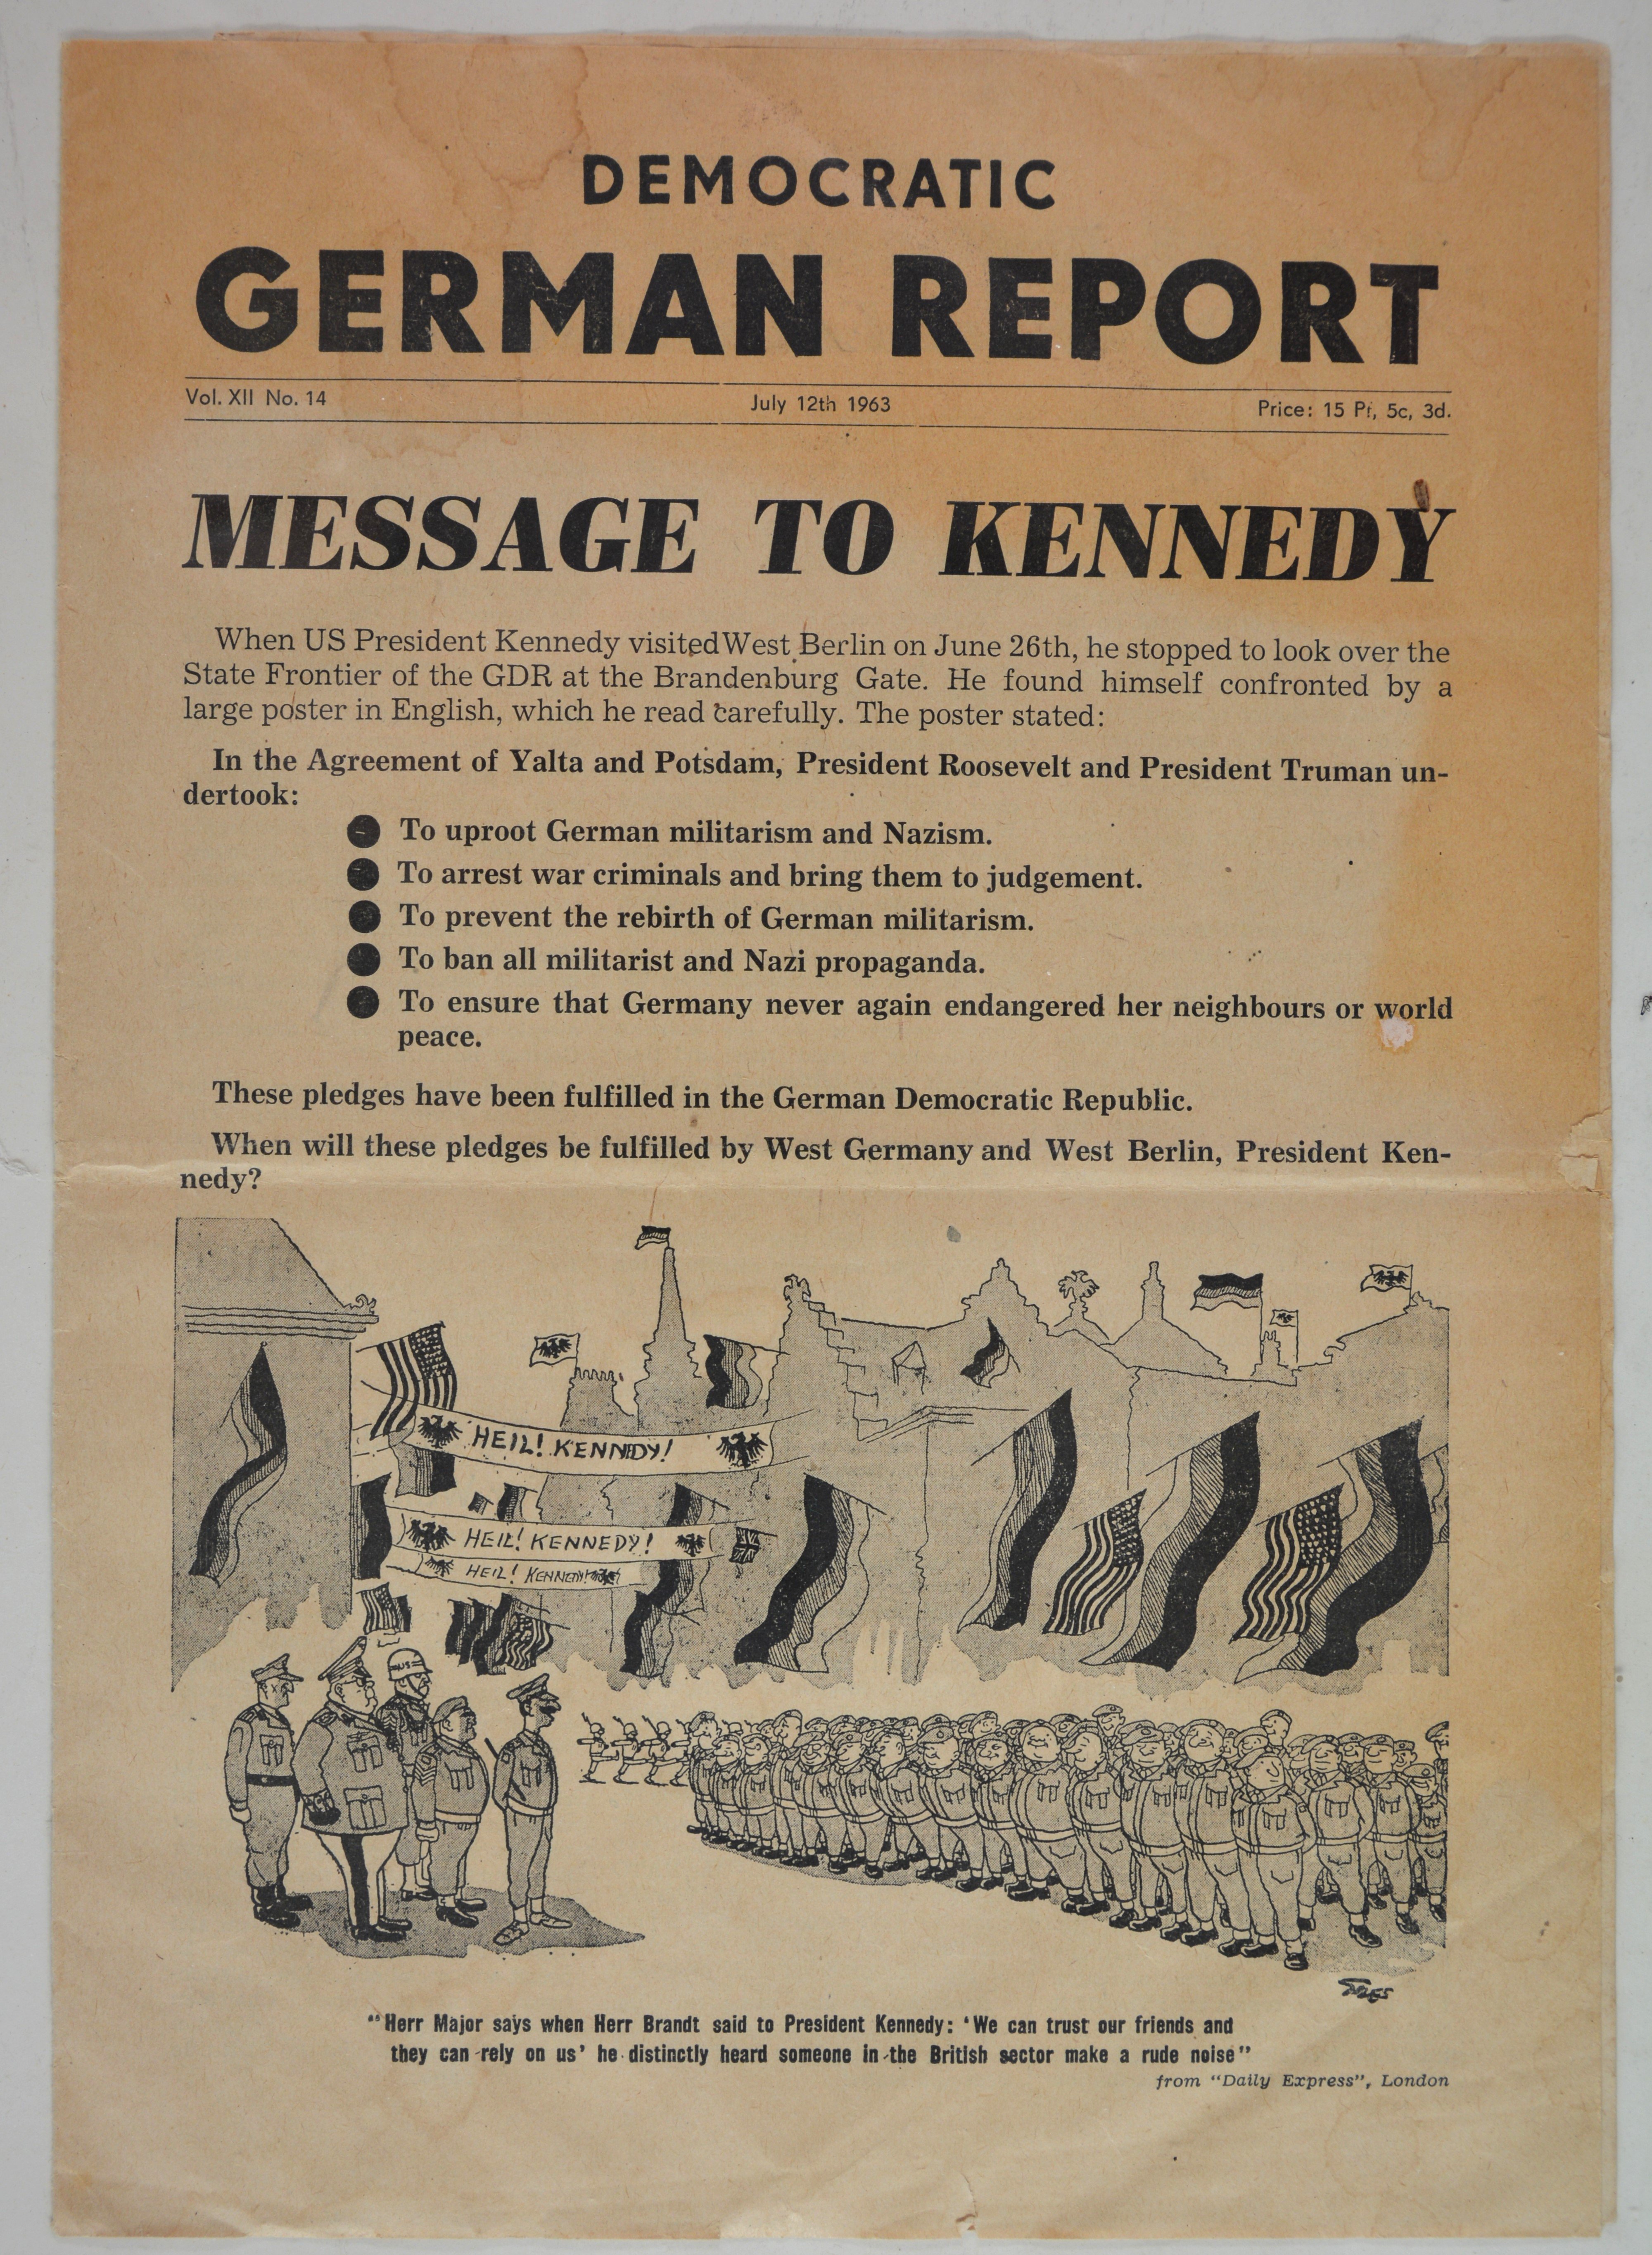 Zeitung: German Democratic Report (12. Juli 1963) (DDR Geschichtsmuseum und Dokumentationszentrum Perleberg CC BY-SA)